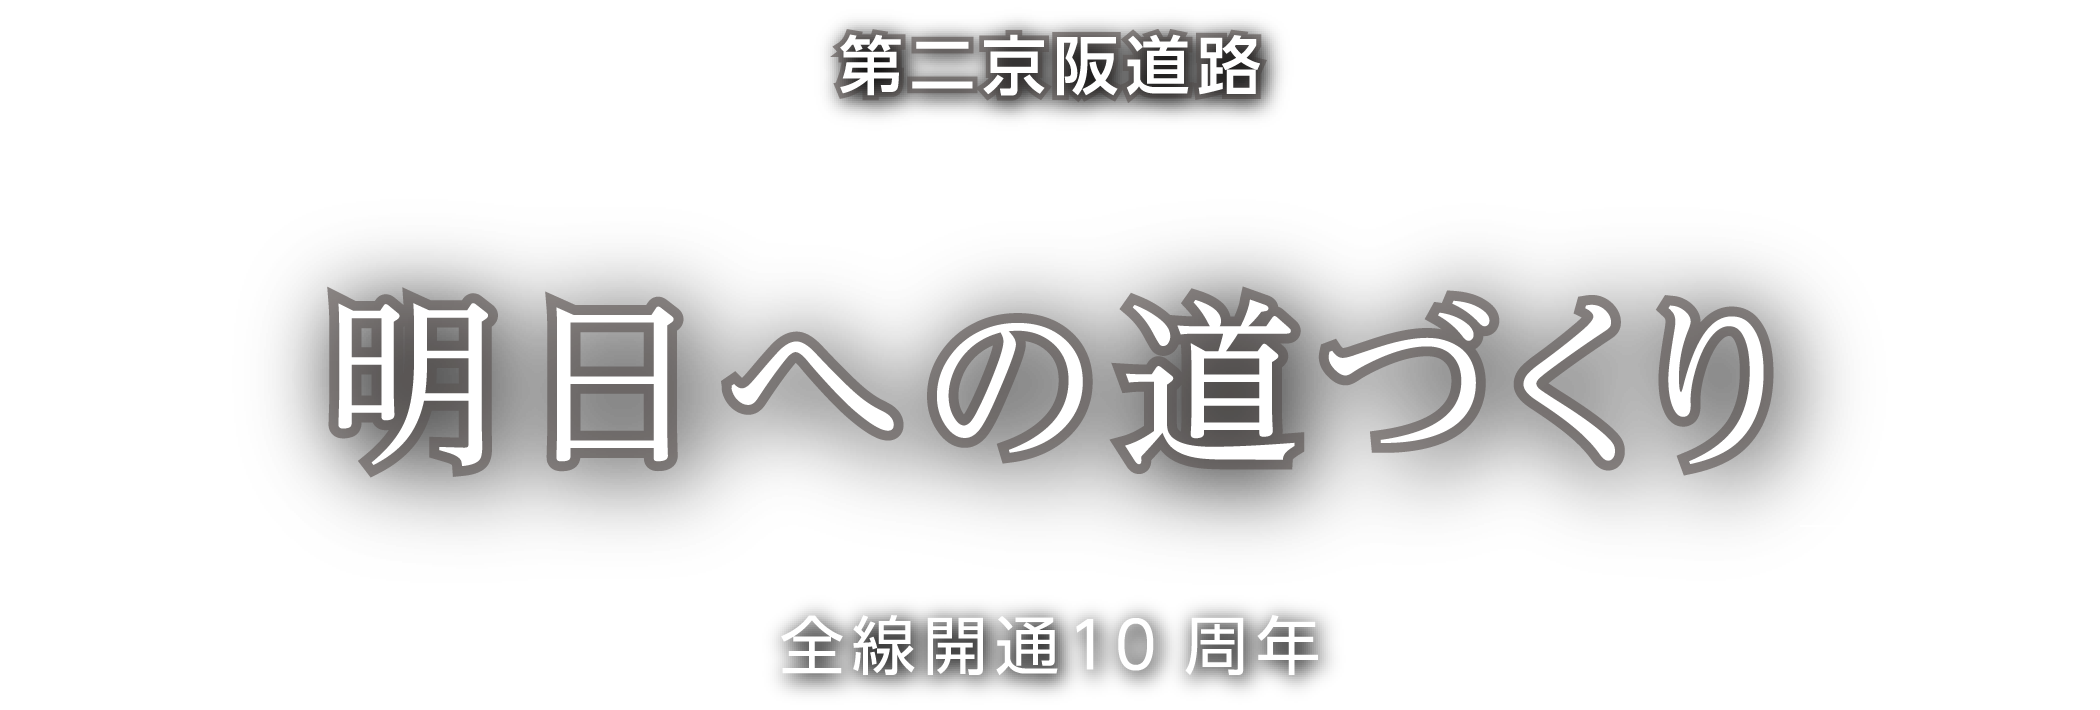 第二京阪道路「明日への道づくり」全線開通10周年